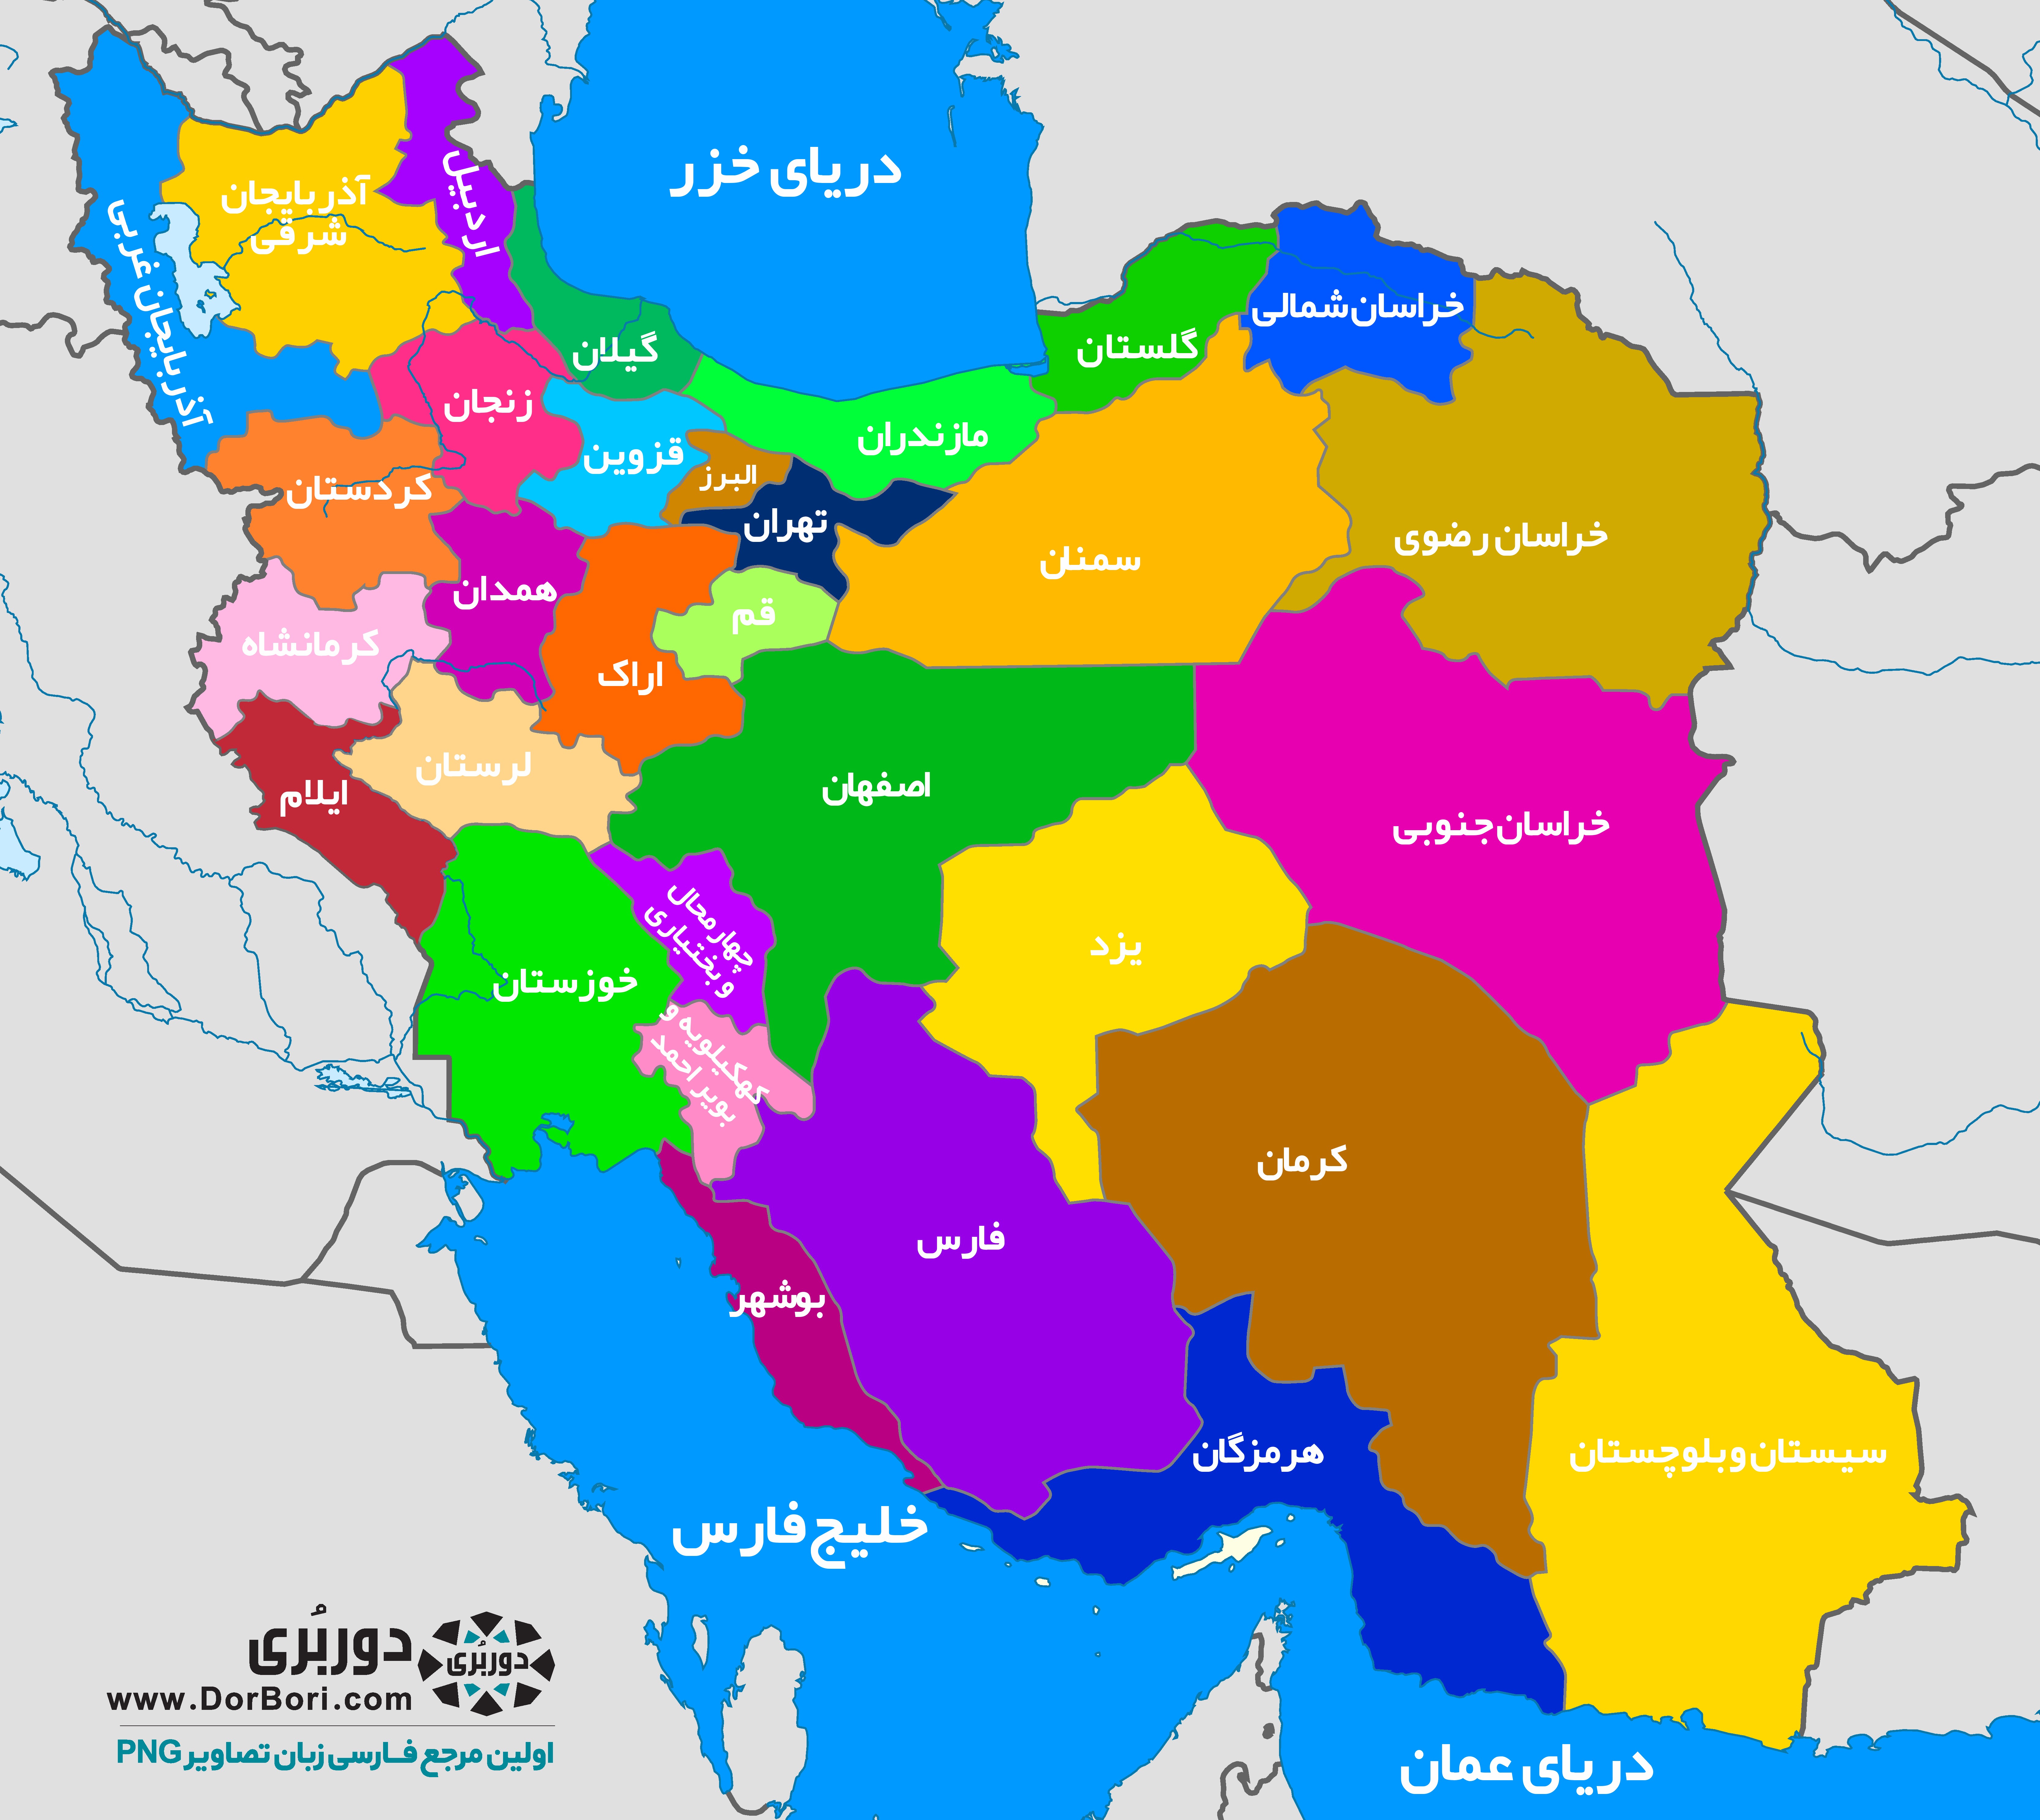 دانلود نقشه ی کامل کشور ایران بصورت عکس